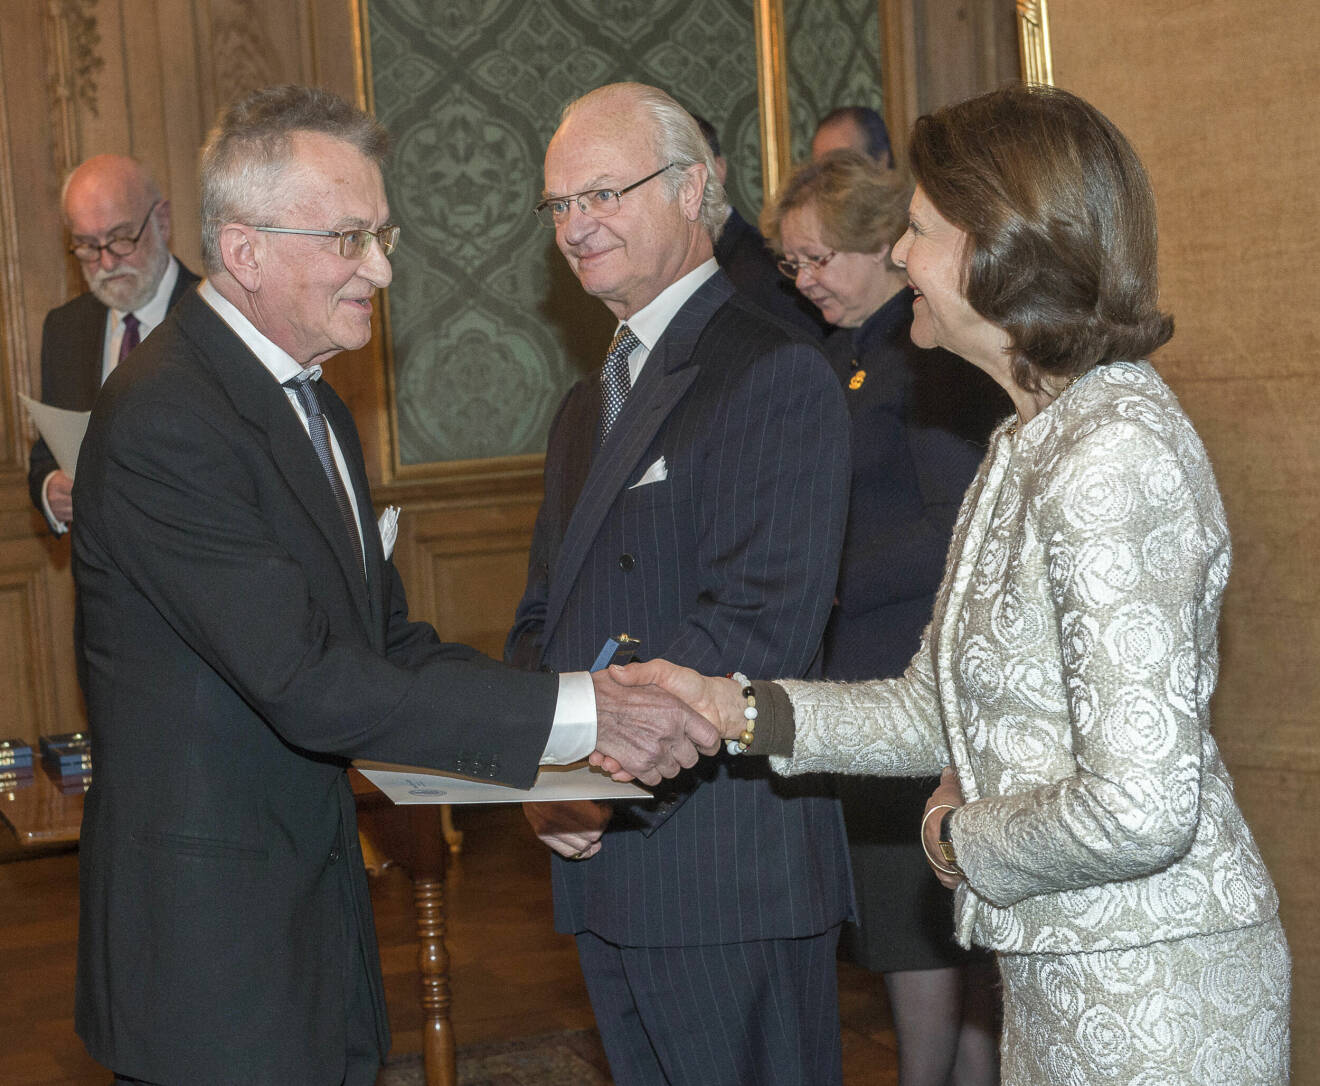 2015 fick Hans Gedda ta emot kungens medalj i 8:e storleken för sitt värv. Han fotograferade kung Carl XVI Gustaf och drottning Silvia i både professionella och privata sammanhang.